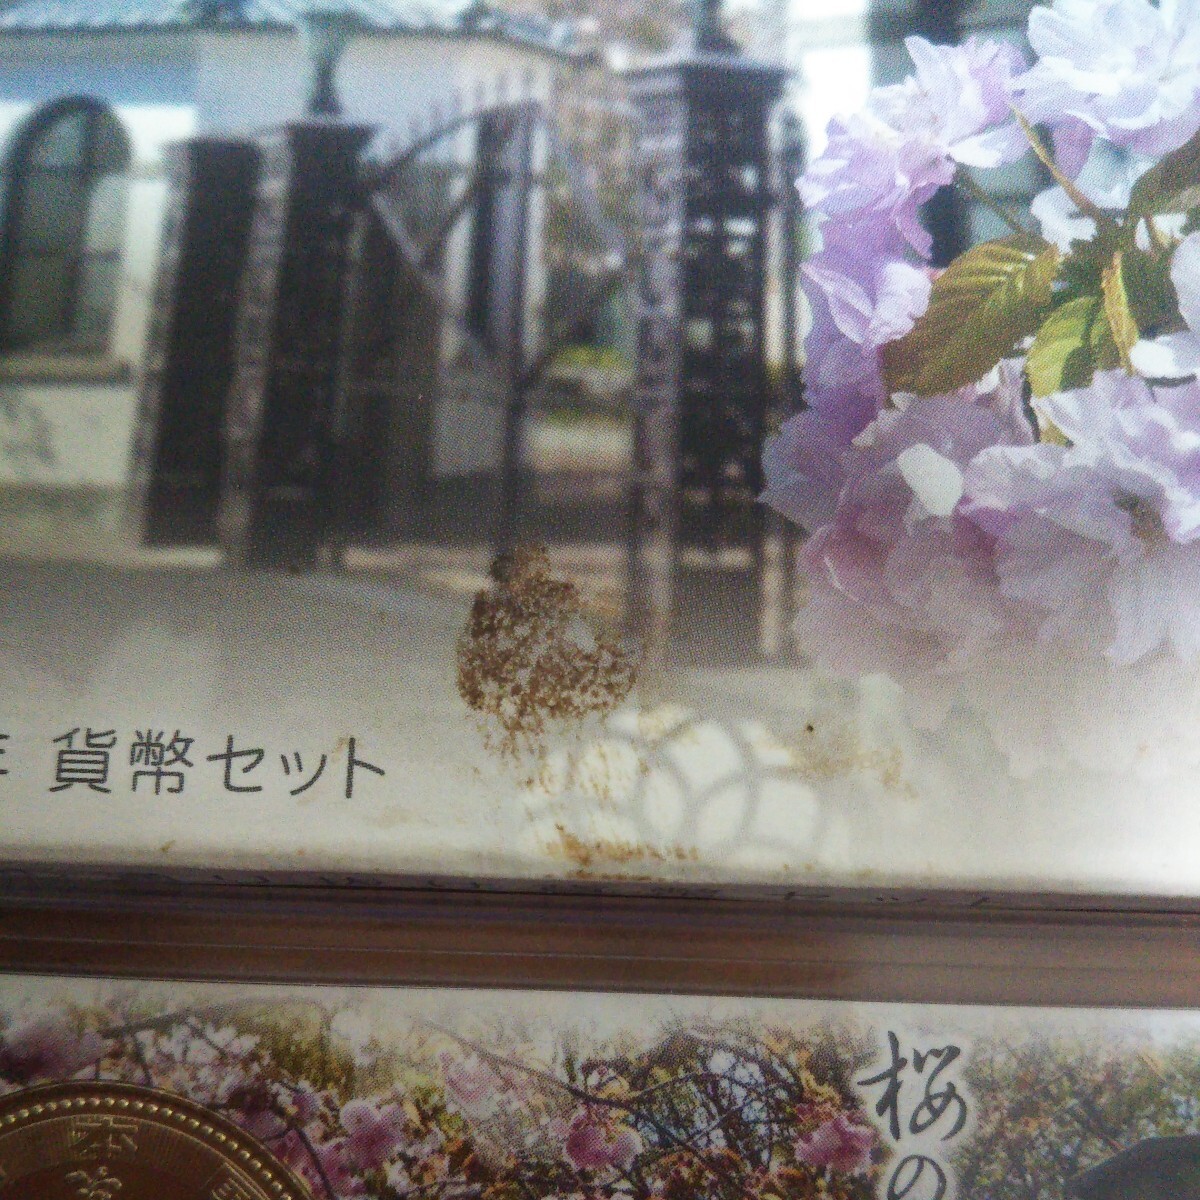 【貨幣セット/桜通】 平成24年 2012 桜の通り抜け ミントセット _画像6